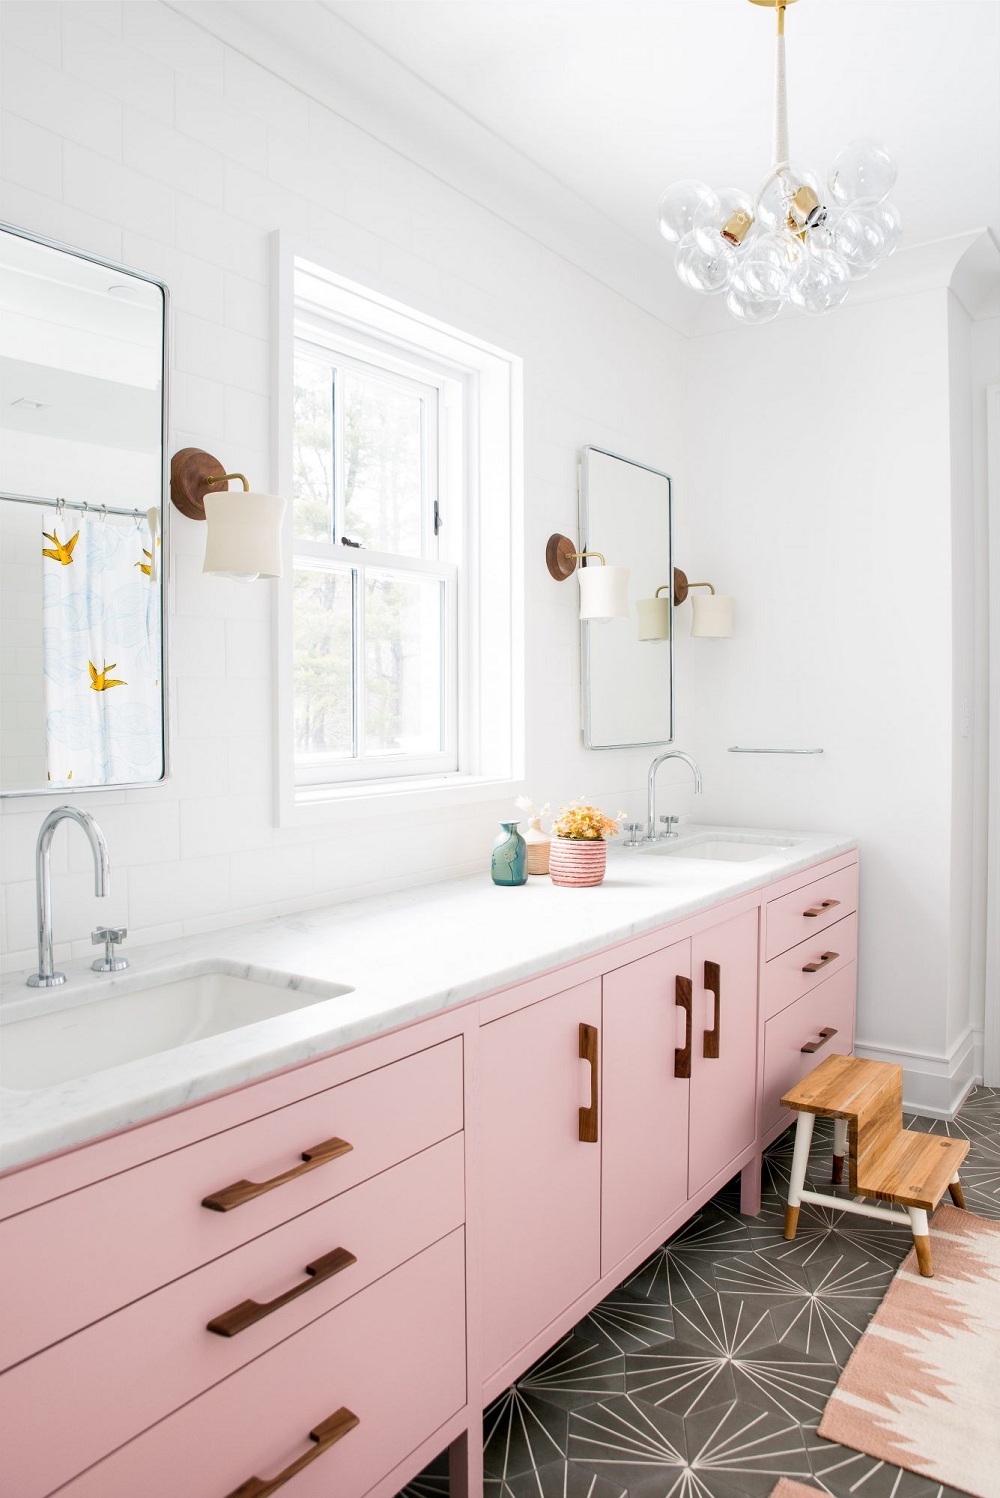 Nếu không thích sơn tường màu hồng, bạn có thể sử dụng nội thất tông màu ngọt ngào tạo điểm nhấn bắt mắt.